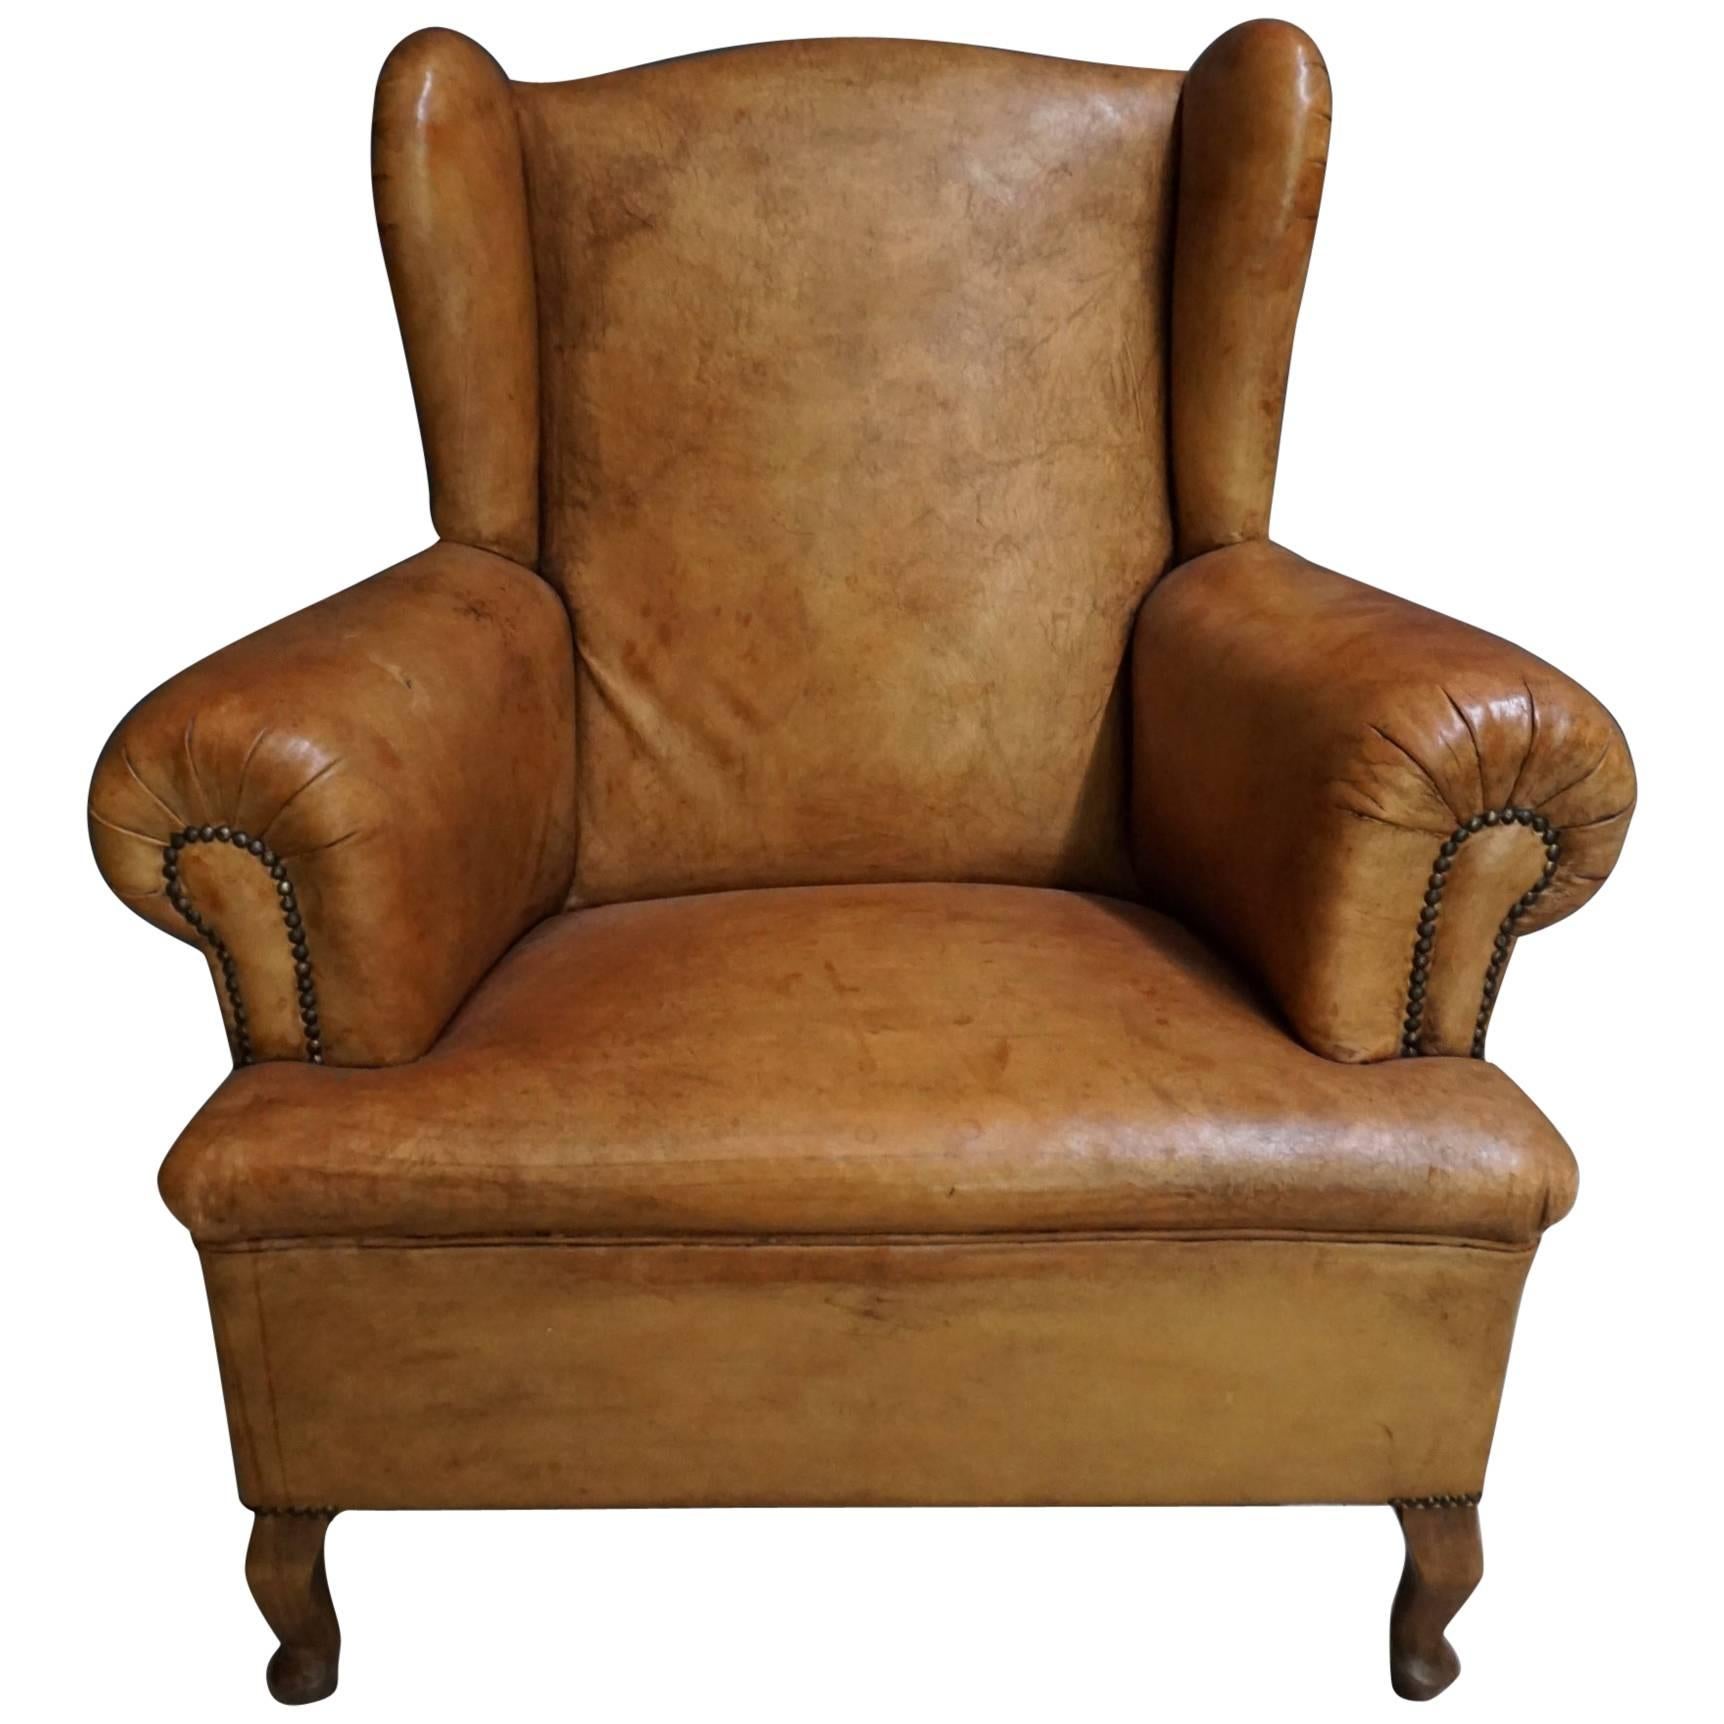 Dutch Antique Cognac-Colored Leather Club Chair